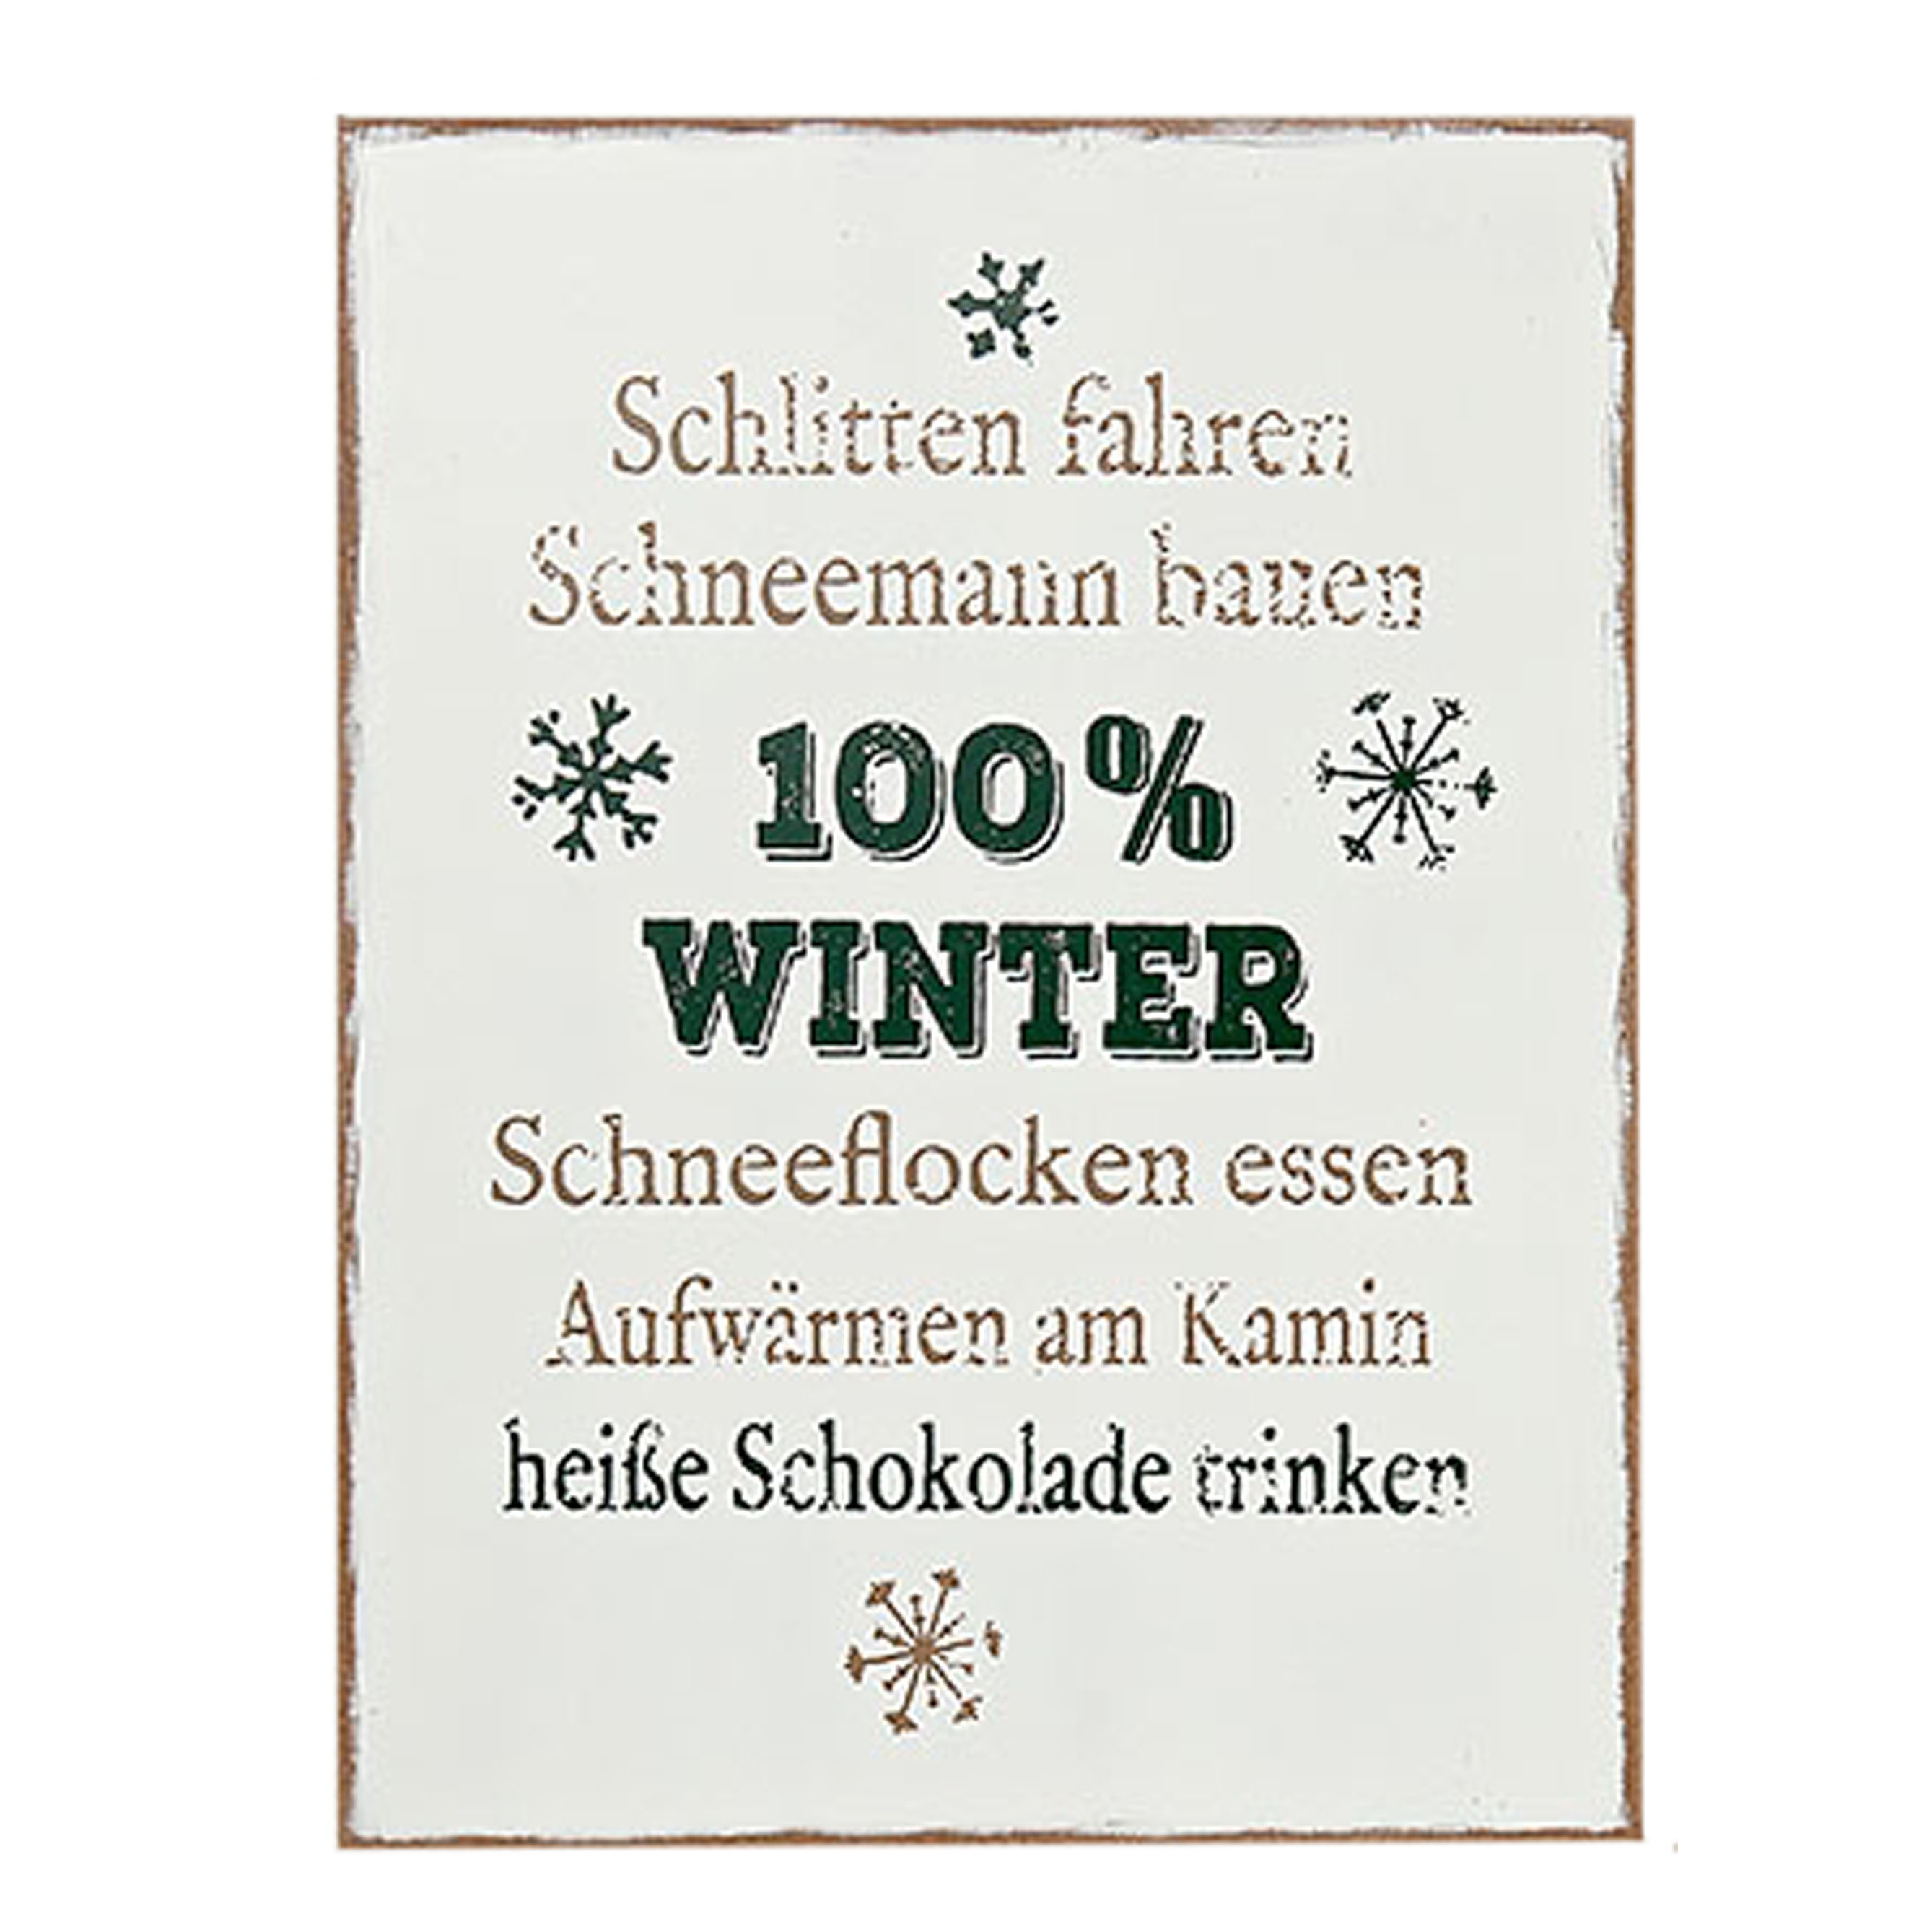 Boltze Deko Schild mit Spruch "Schlitten fahren, Schneemann bauen, 100% Winter, Schneeflocken essen, Aufwärmen am Karmin, heiße Schokolade trinken", 3259400, 4020606127082